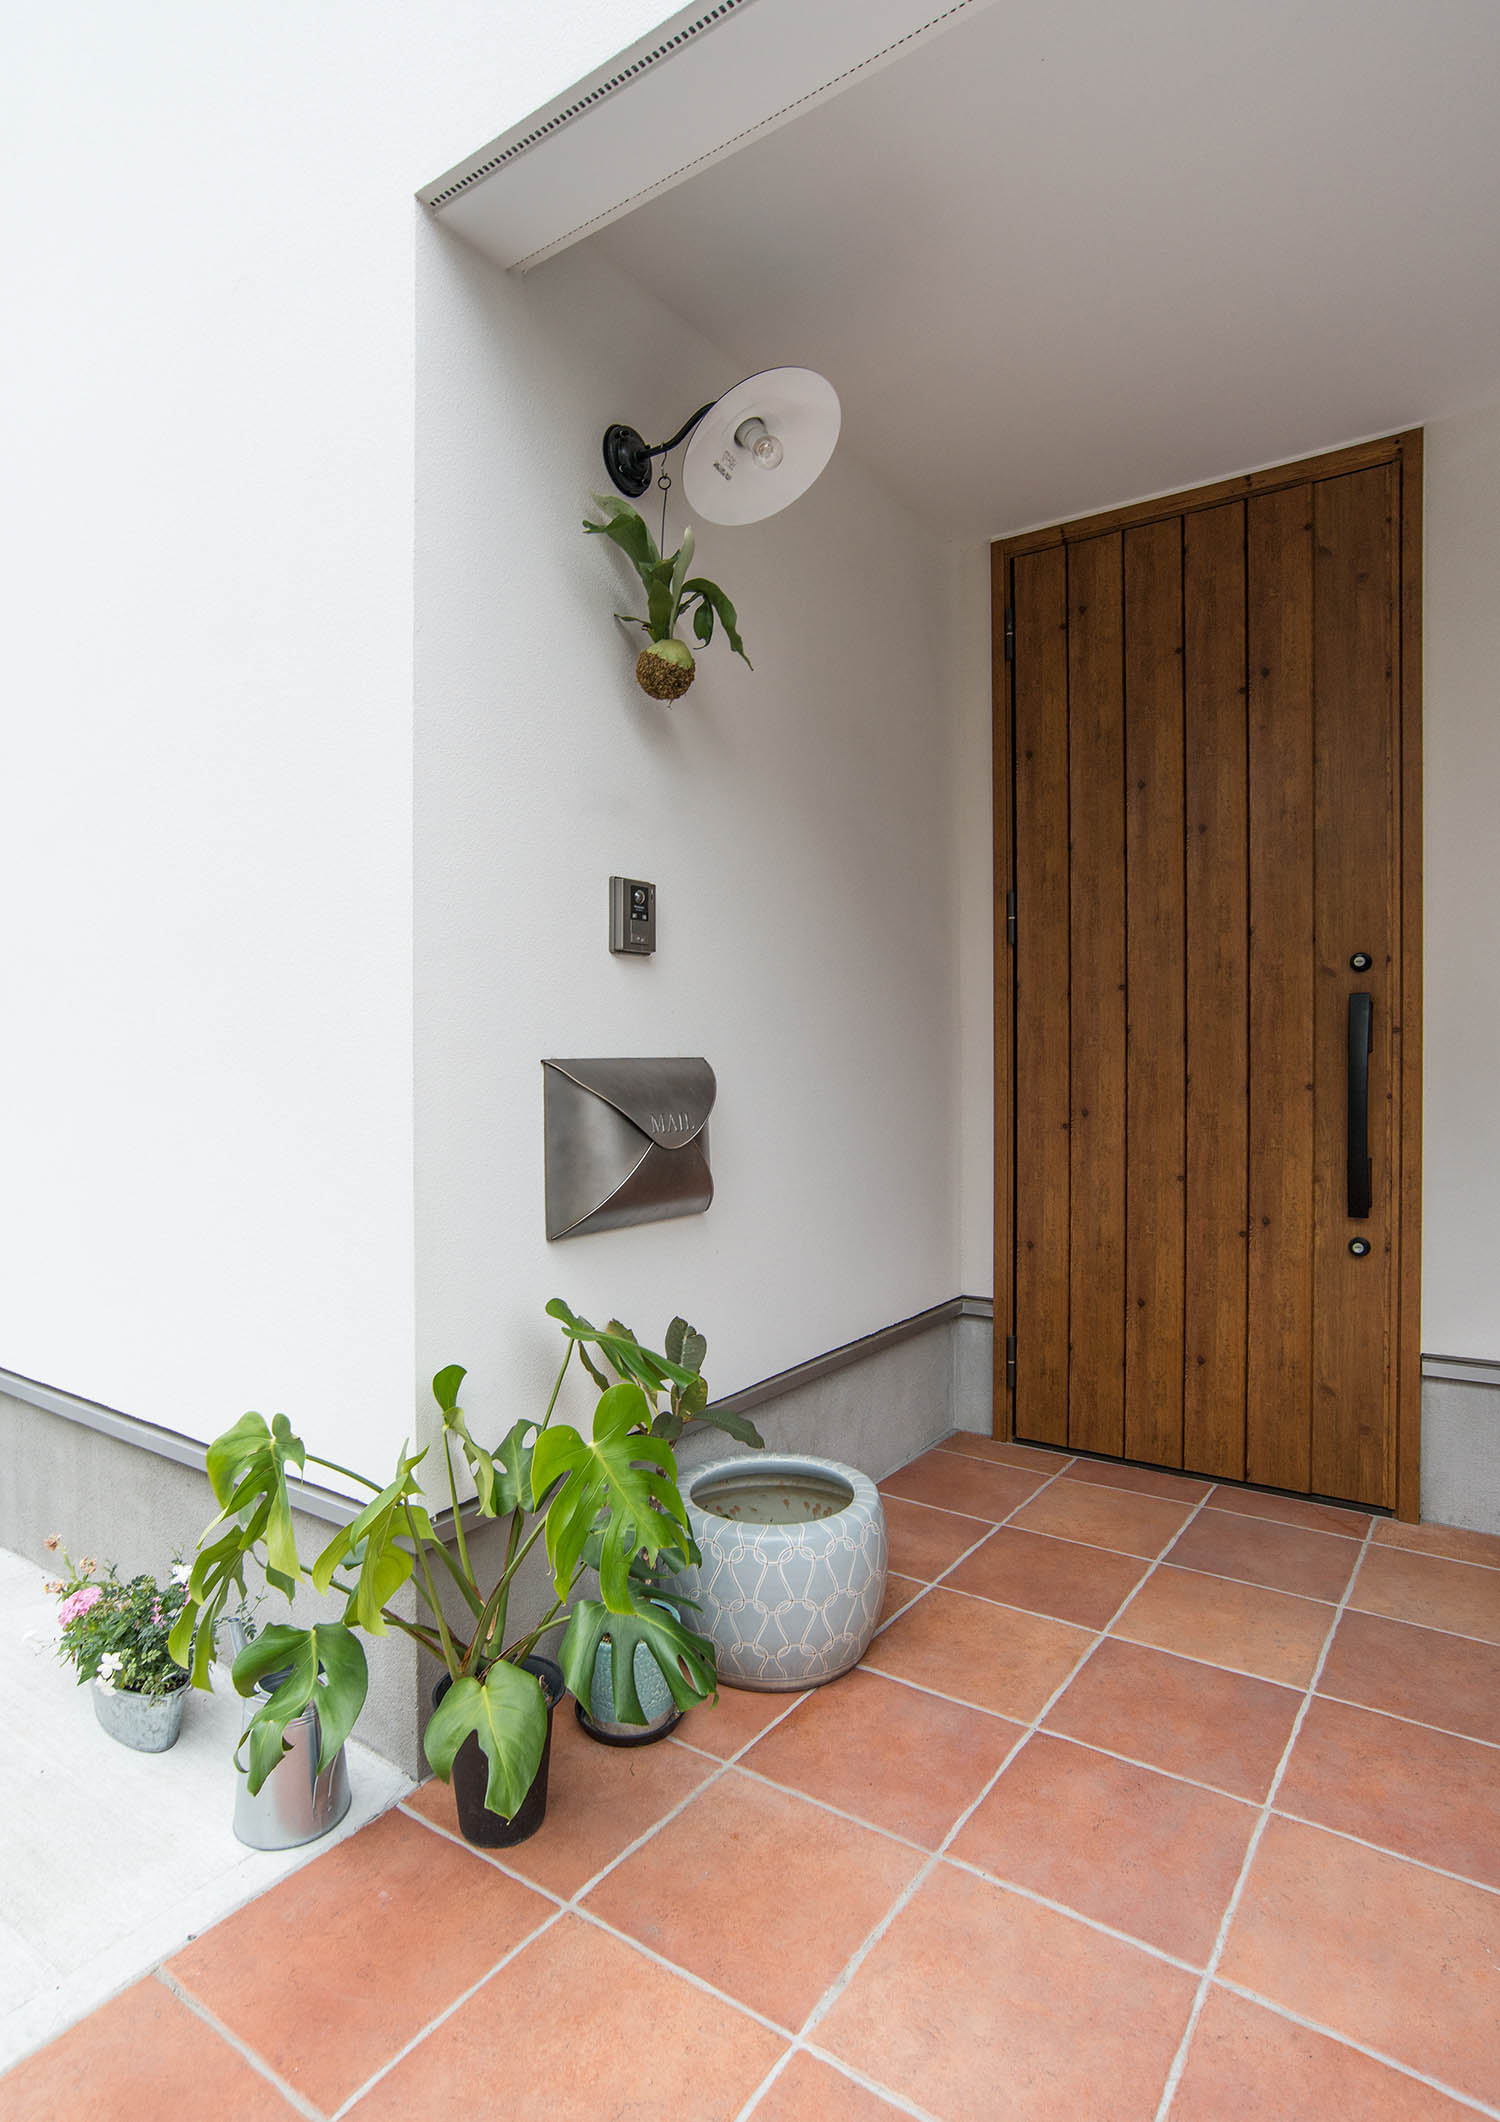 タイル張りの床に観葉植物が置かれている玄関ポーチ・デザイン住宅